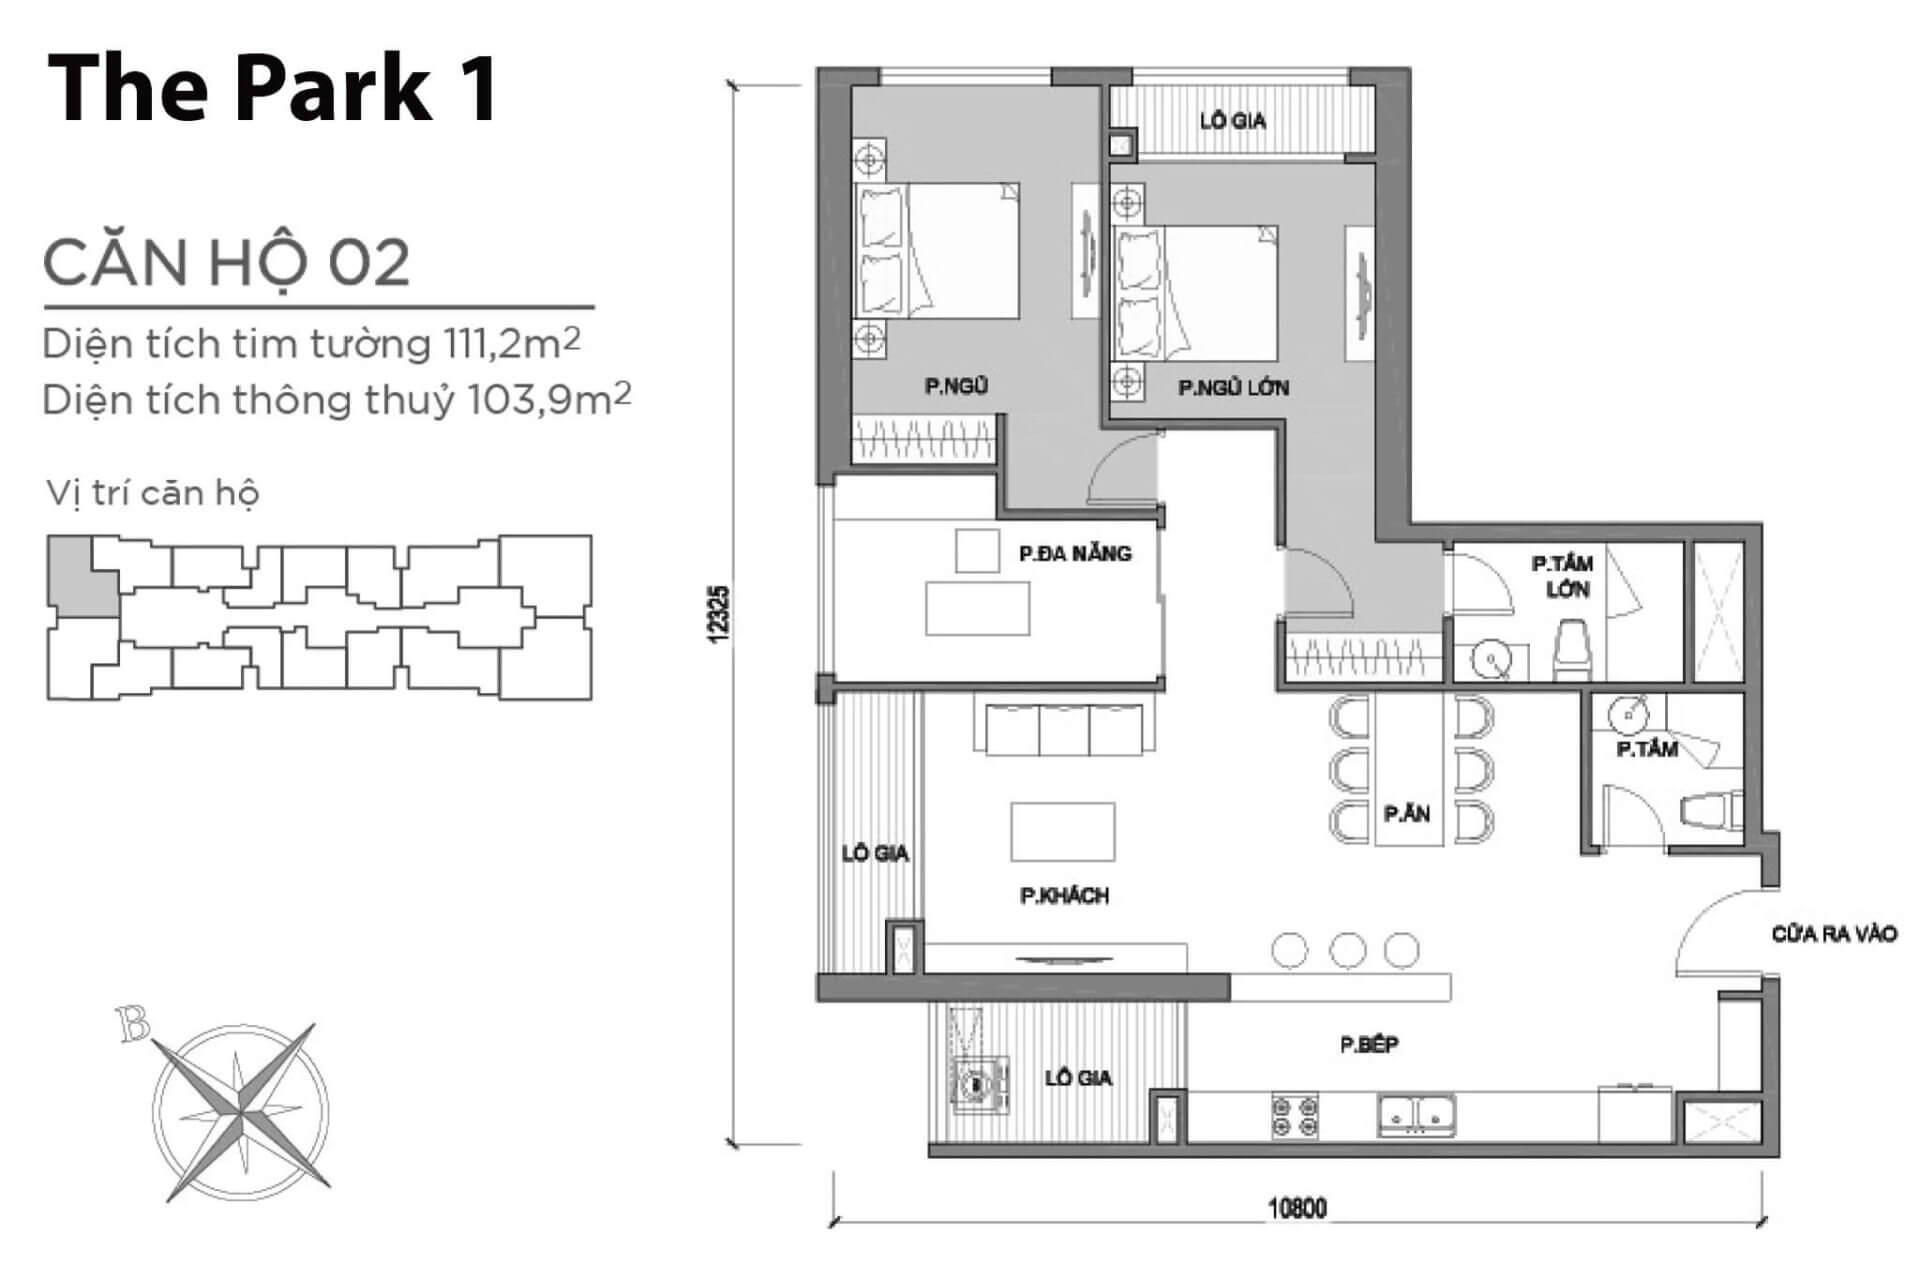 mặt bằng layout căn hộ số 2 Park 1 Vinhomes Central Park